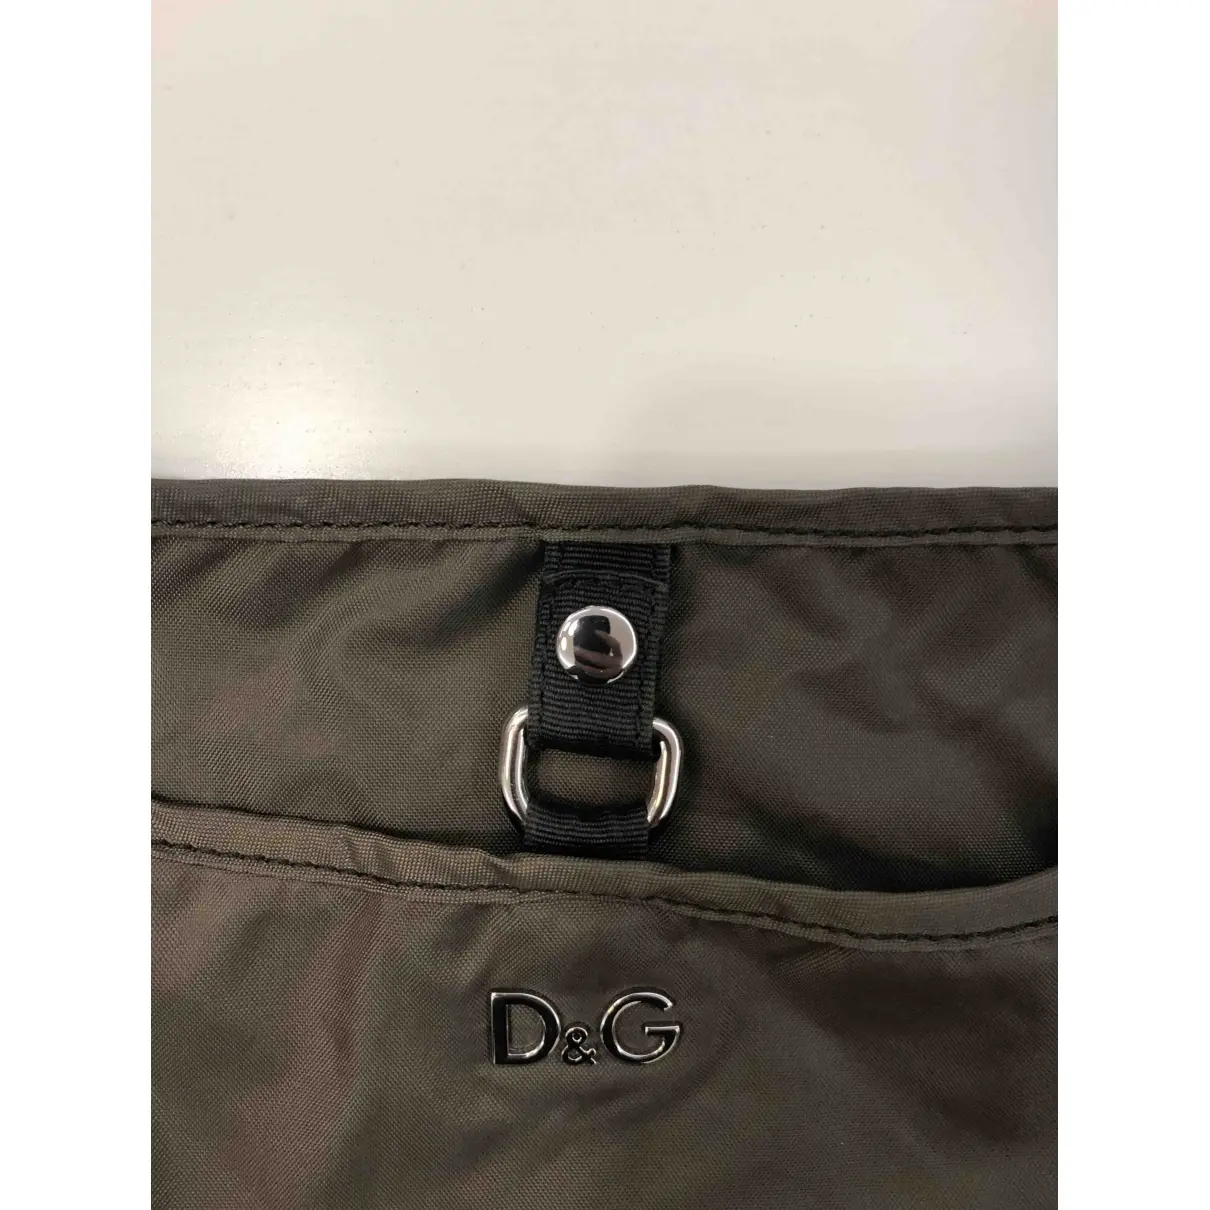 Buy D&G Bag online